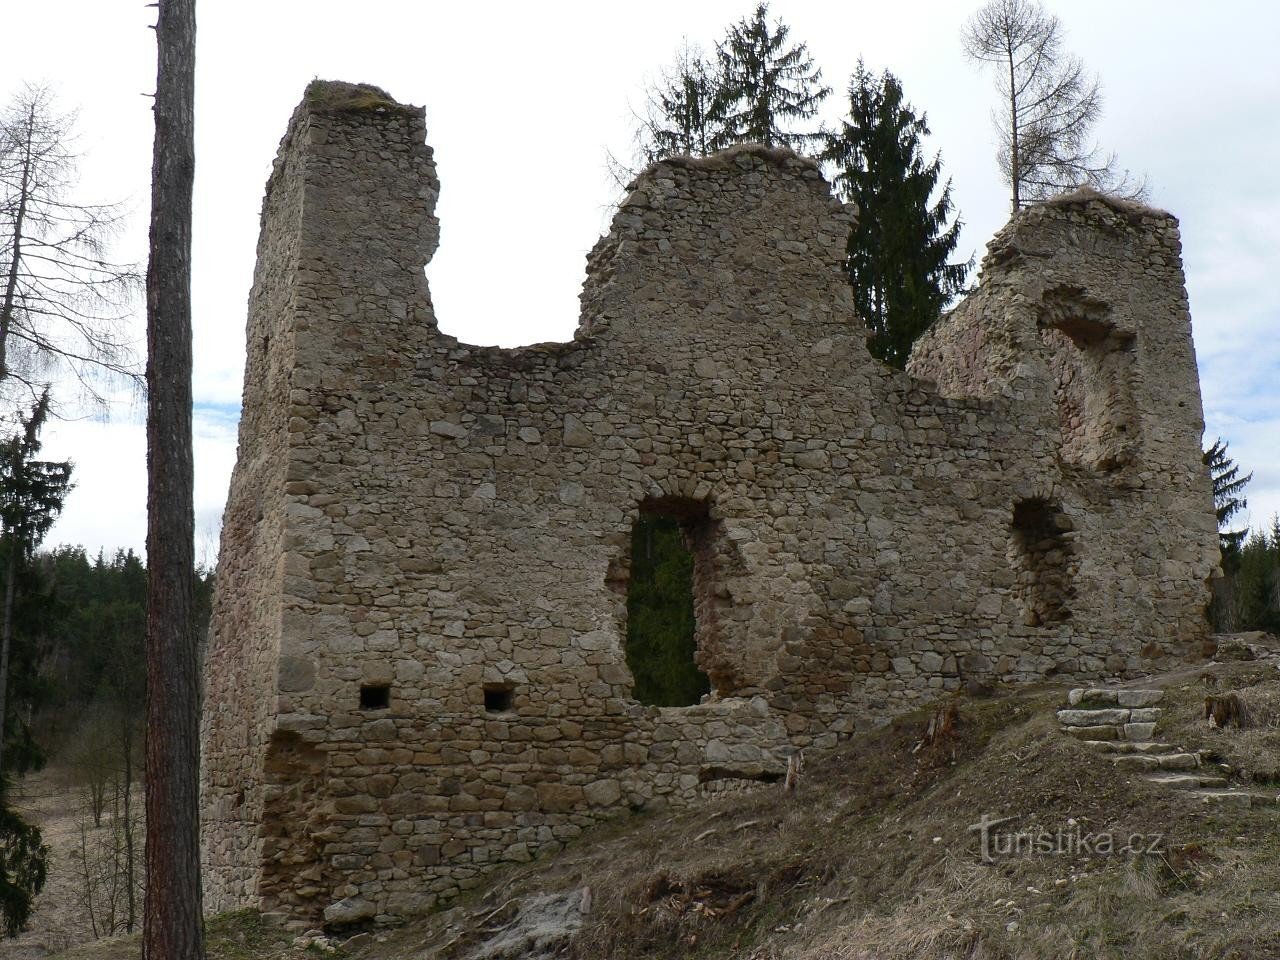 Porešín, lâu đài cung điện